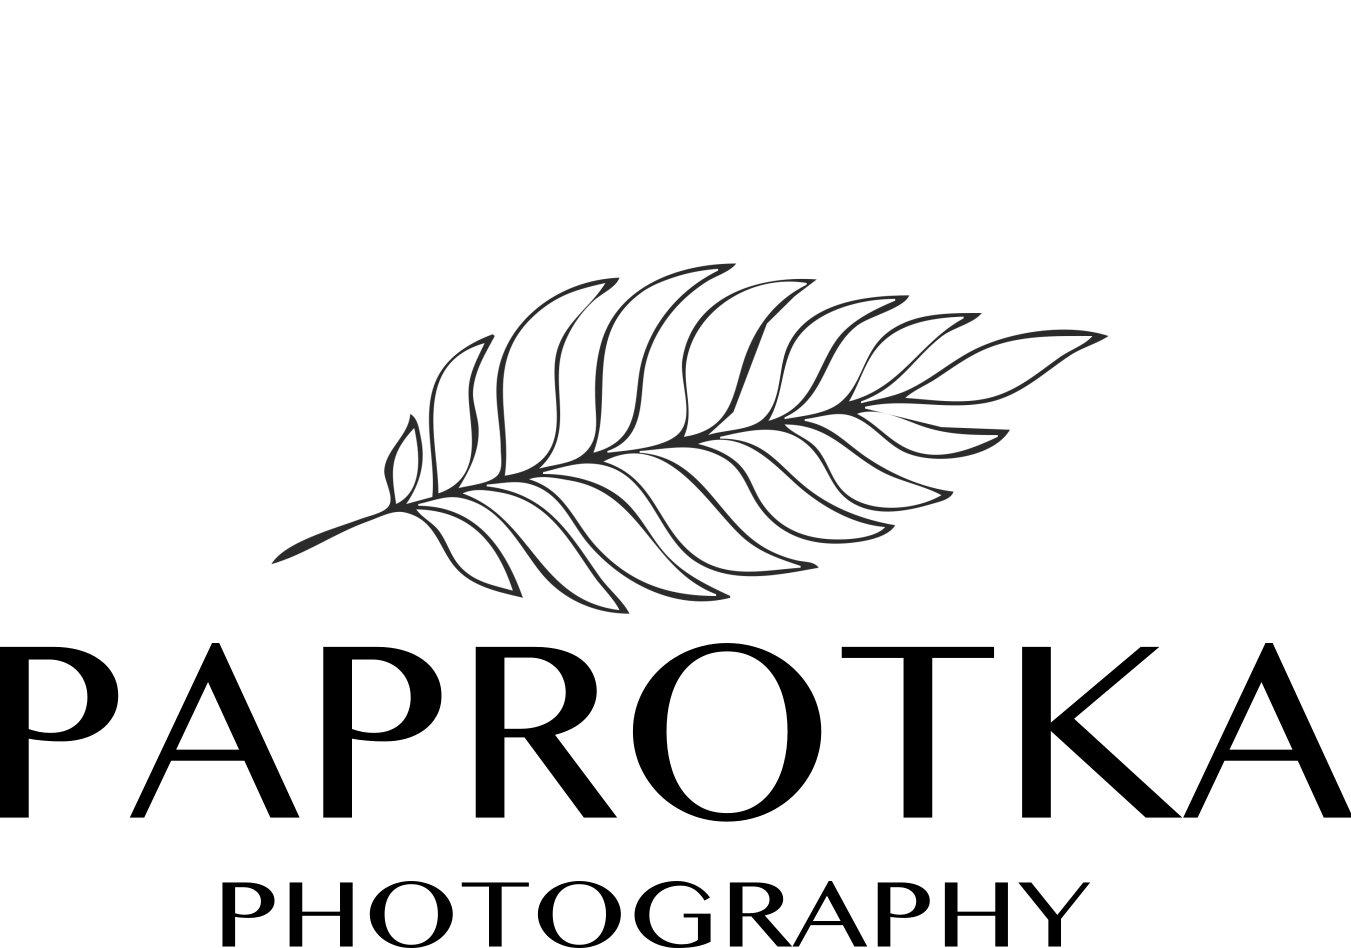 Paprotka Photography